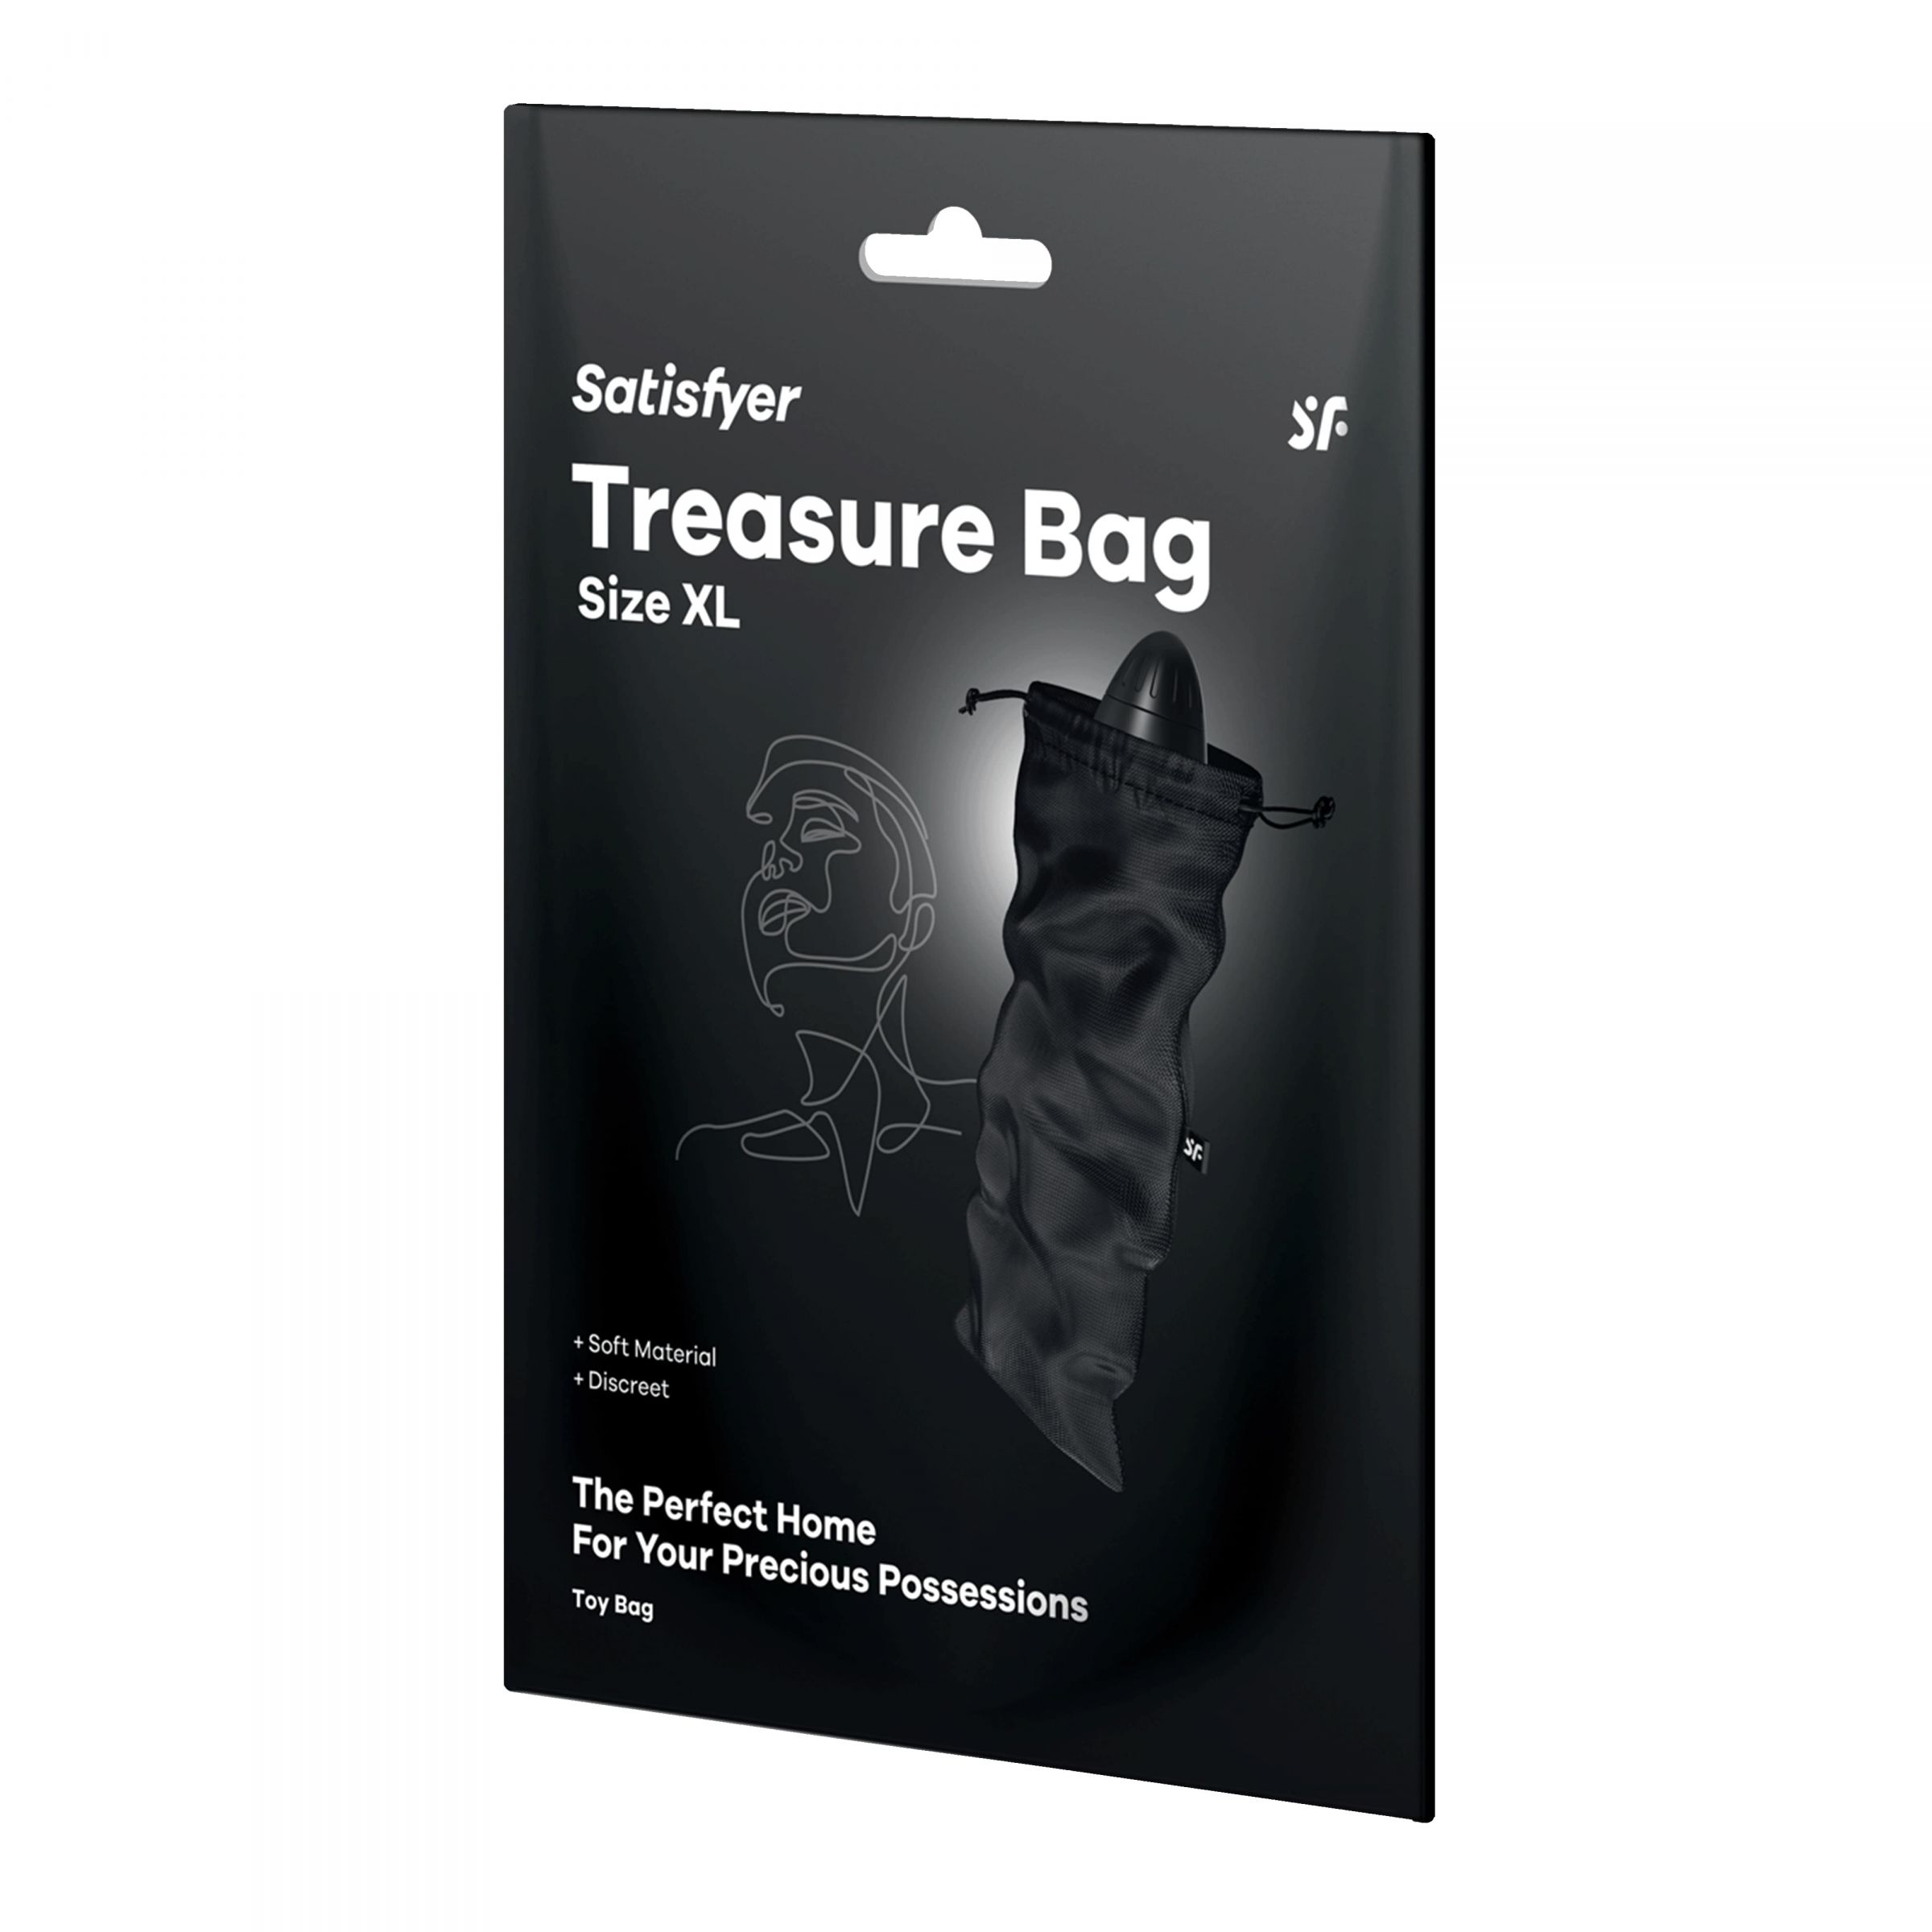 Satisfyer Treasure Bag – специализированный мешочек для хранения девайсов. Данный мешочек сделан из прочного материала, который долго и качественно прослужит вложенным в него изделиям. Материал: нейлон, полиэстер, полипропилен. Размеры - 39х19 см.